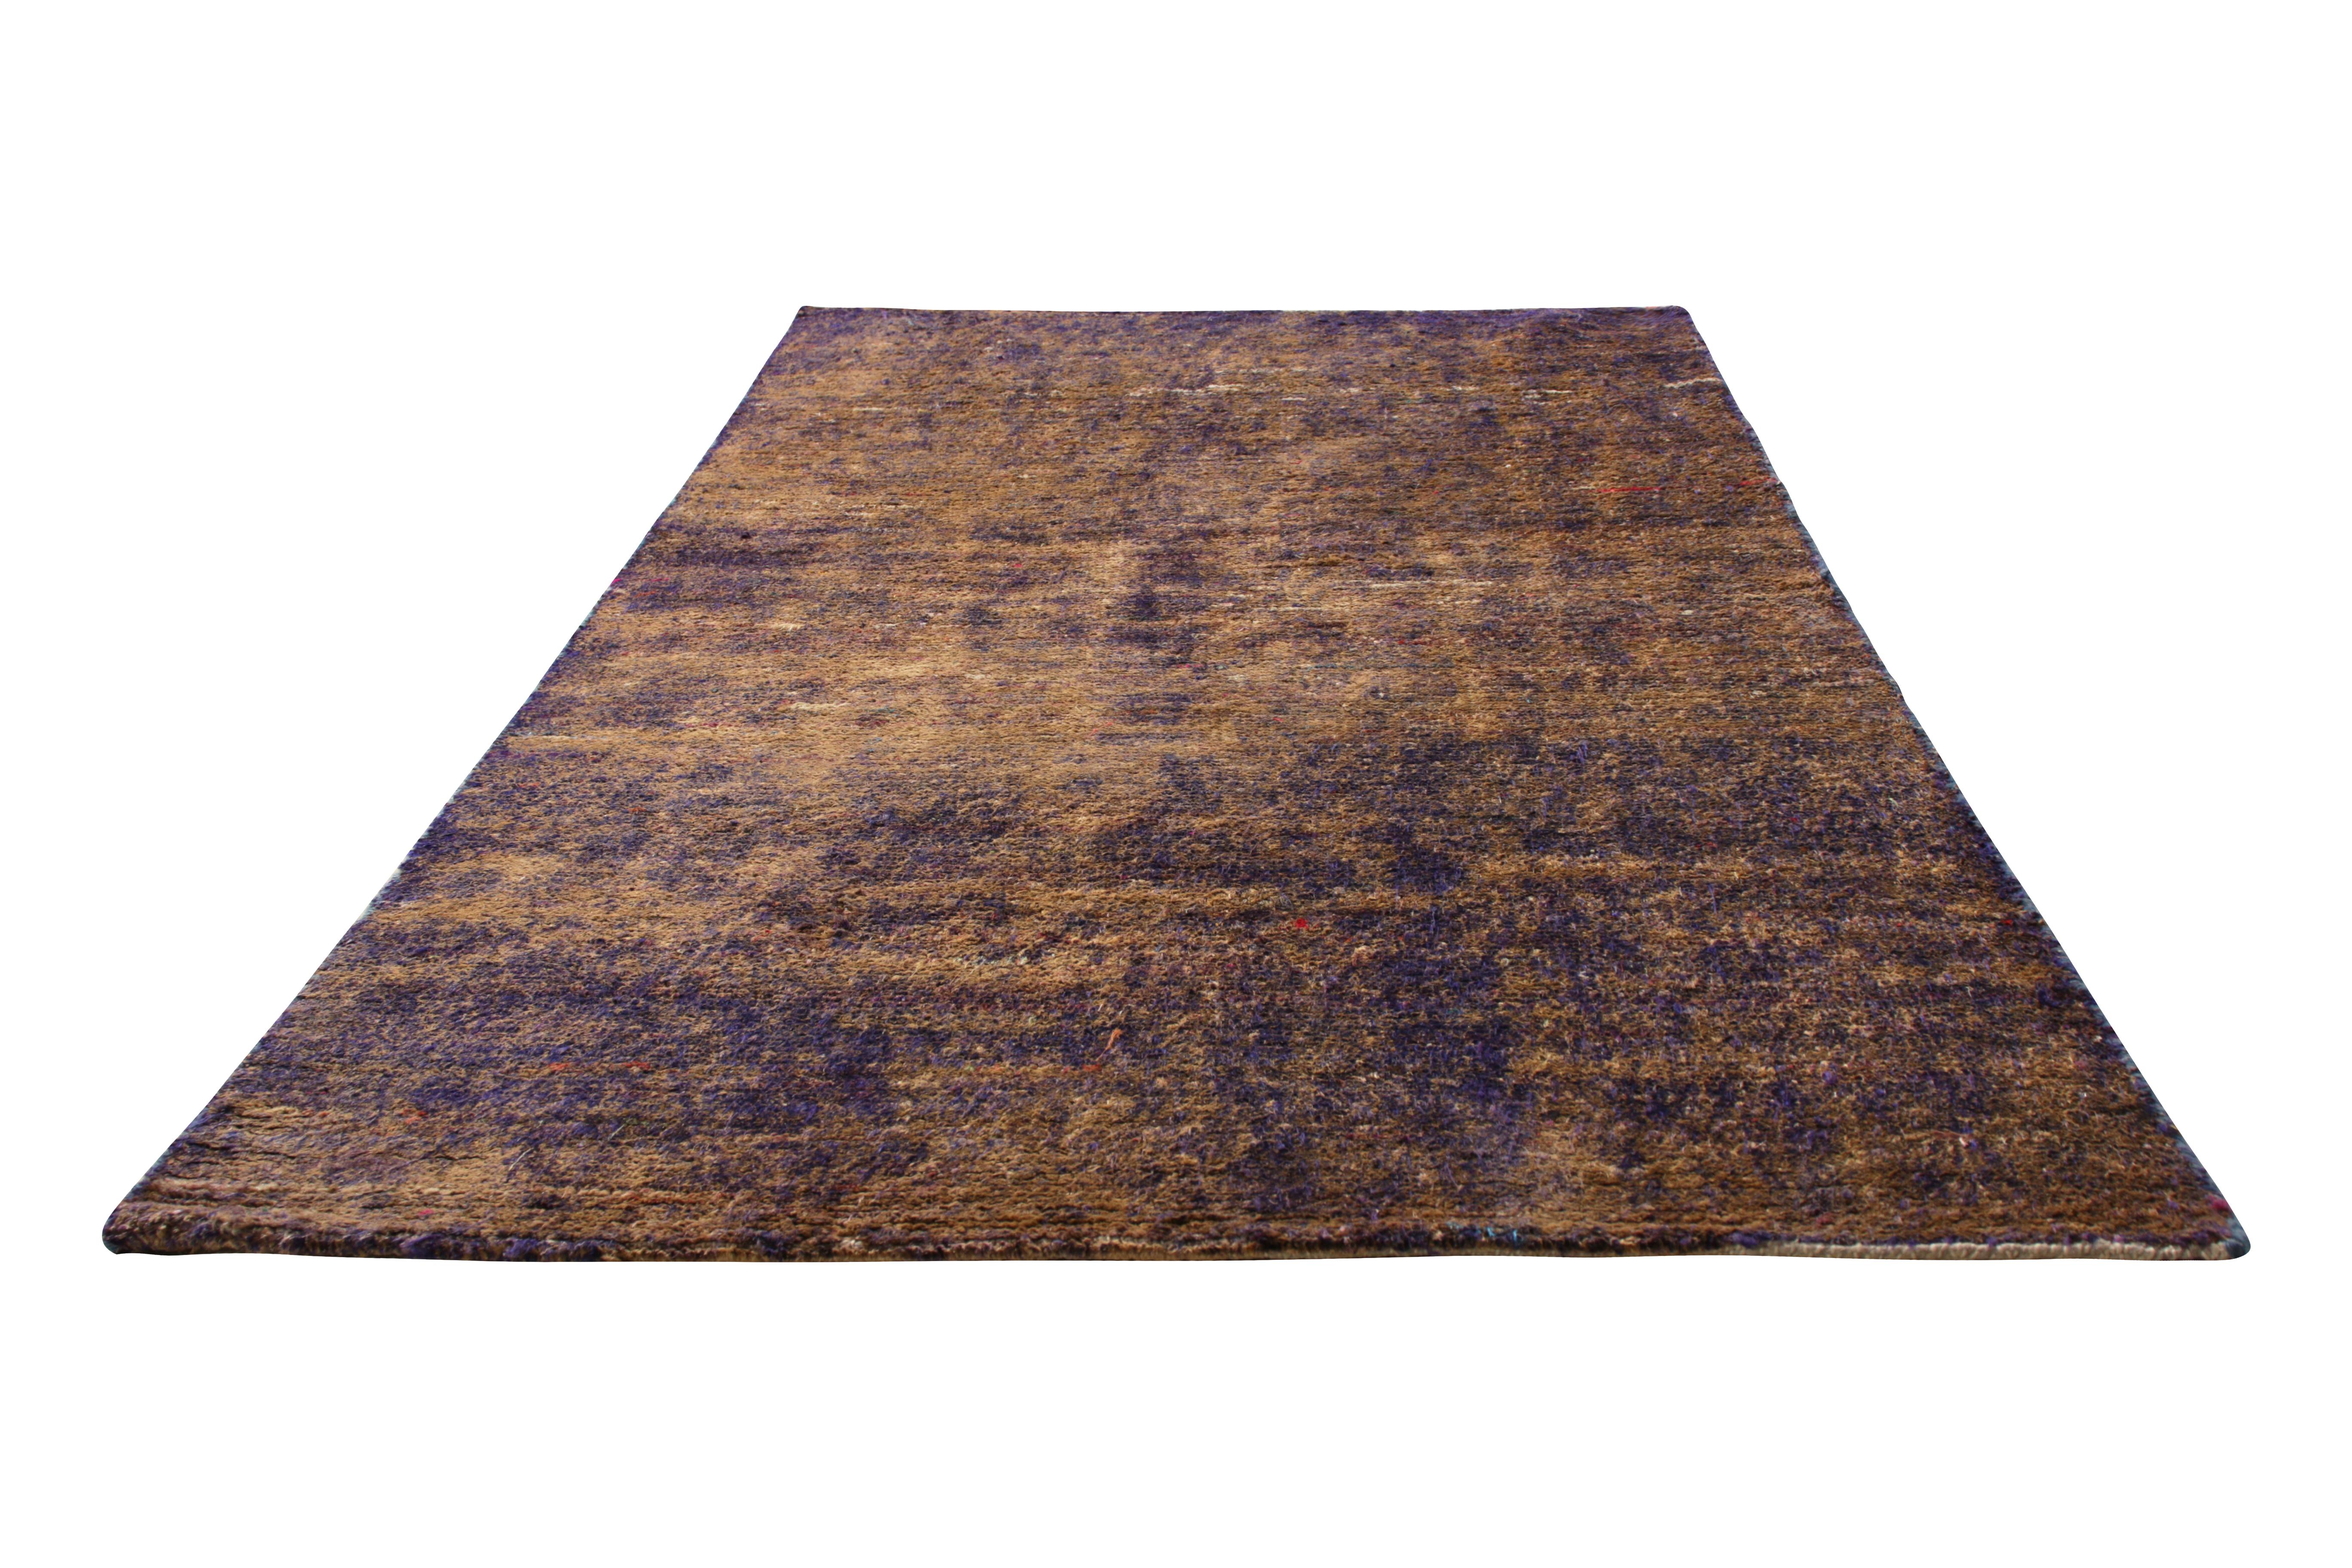 Handgefertigt aus glänzender Seide, ist dieser frühe moderne Teppich ein Experiment mit außergewöhnlich gefärbtem Garn, das eine unserer erfolgreichsten Kollektionen in der Linie Textur der Farbe inspiriert. Ergänzt durch den natürlichen, aber